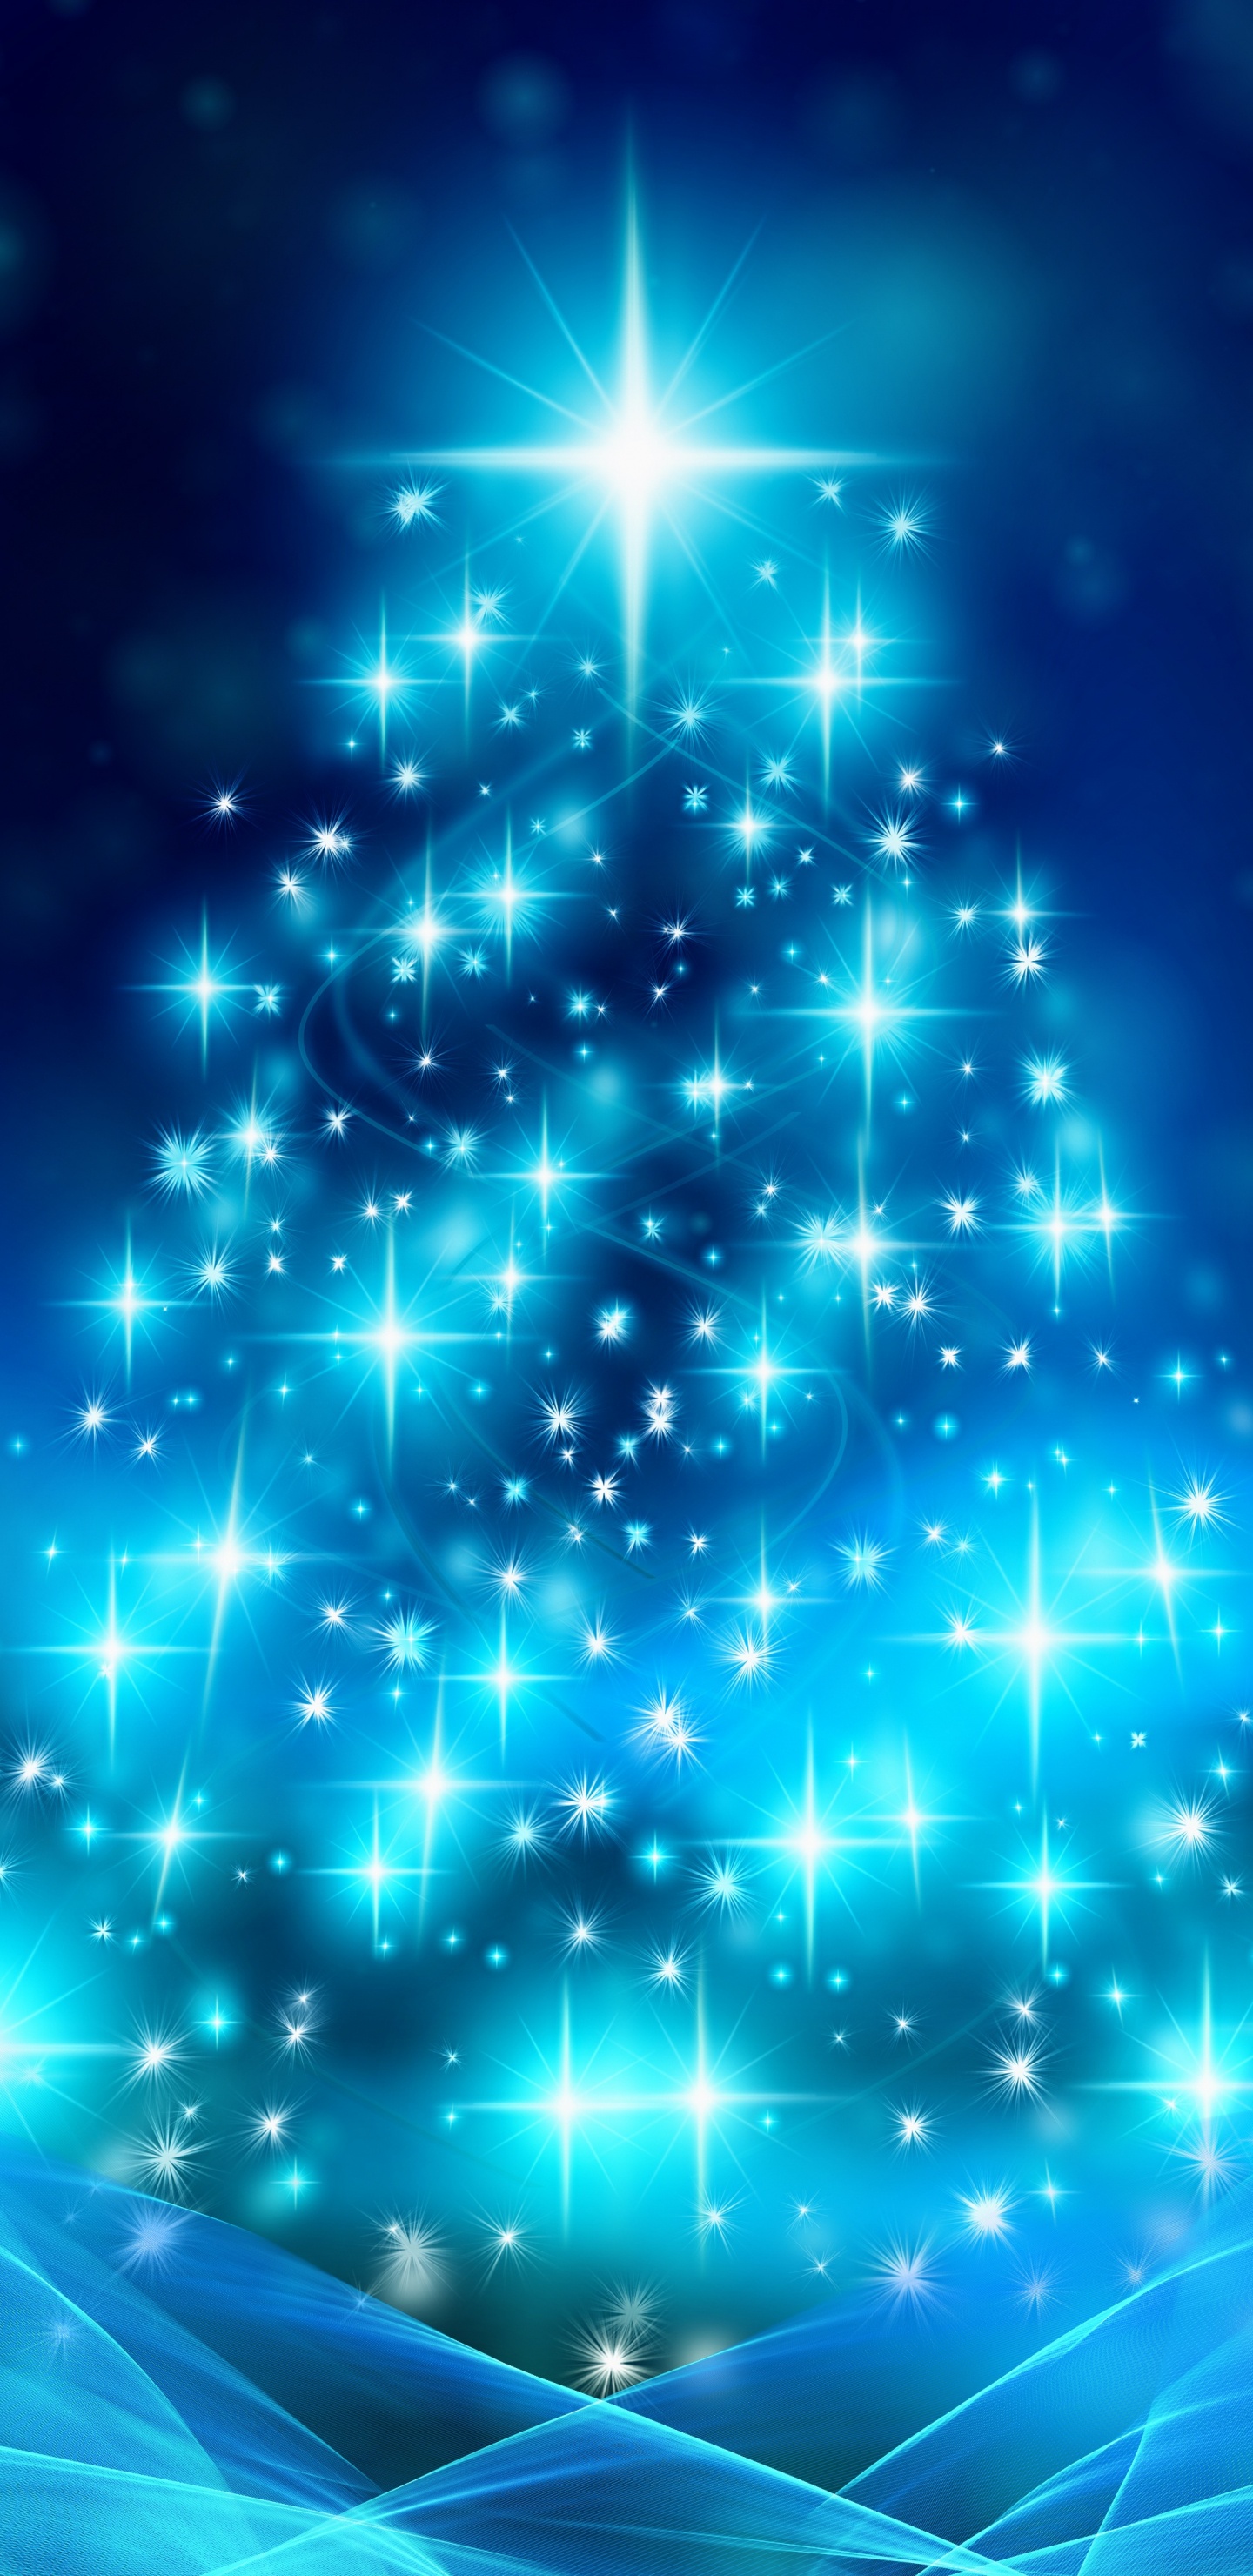 Weihnachten, Weihnachtsbaum, Weihnachtsdekoration, Blau, Baum. Wallpaper in 1440x2960 Resolution